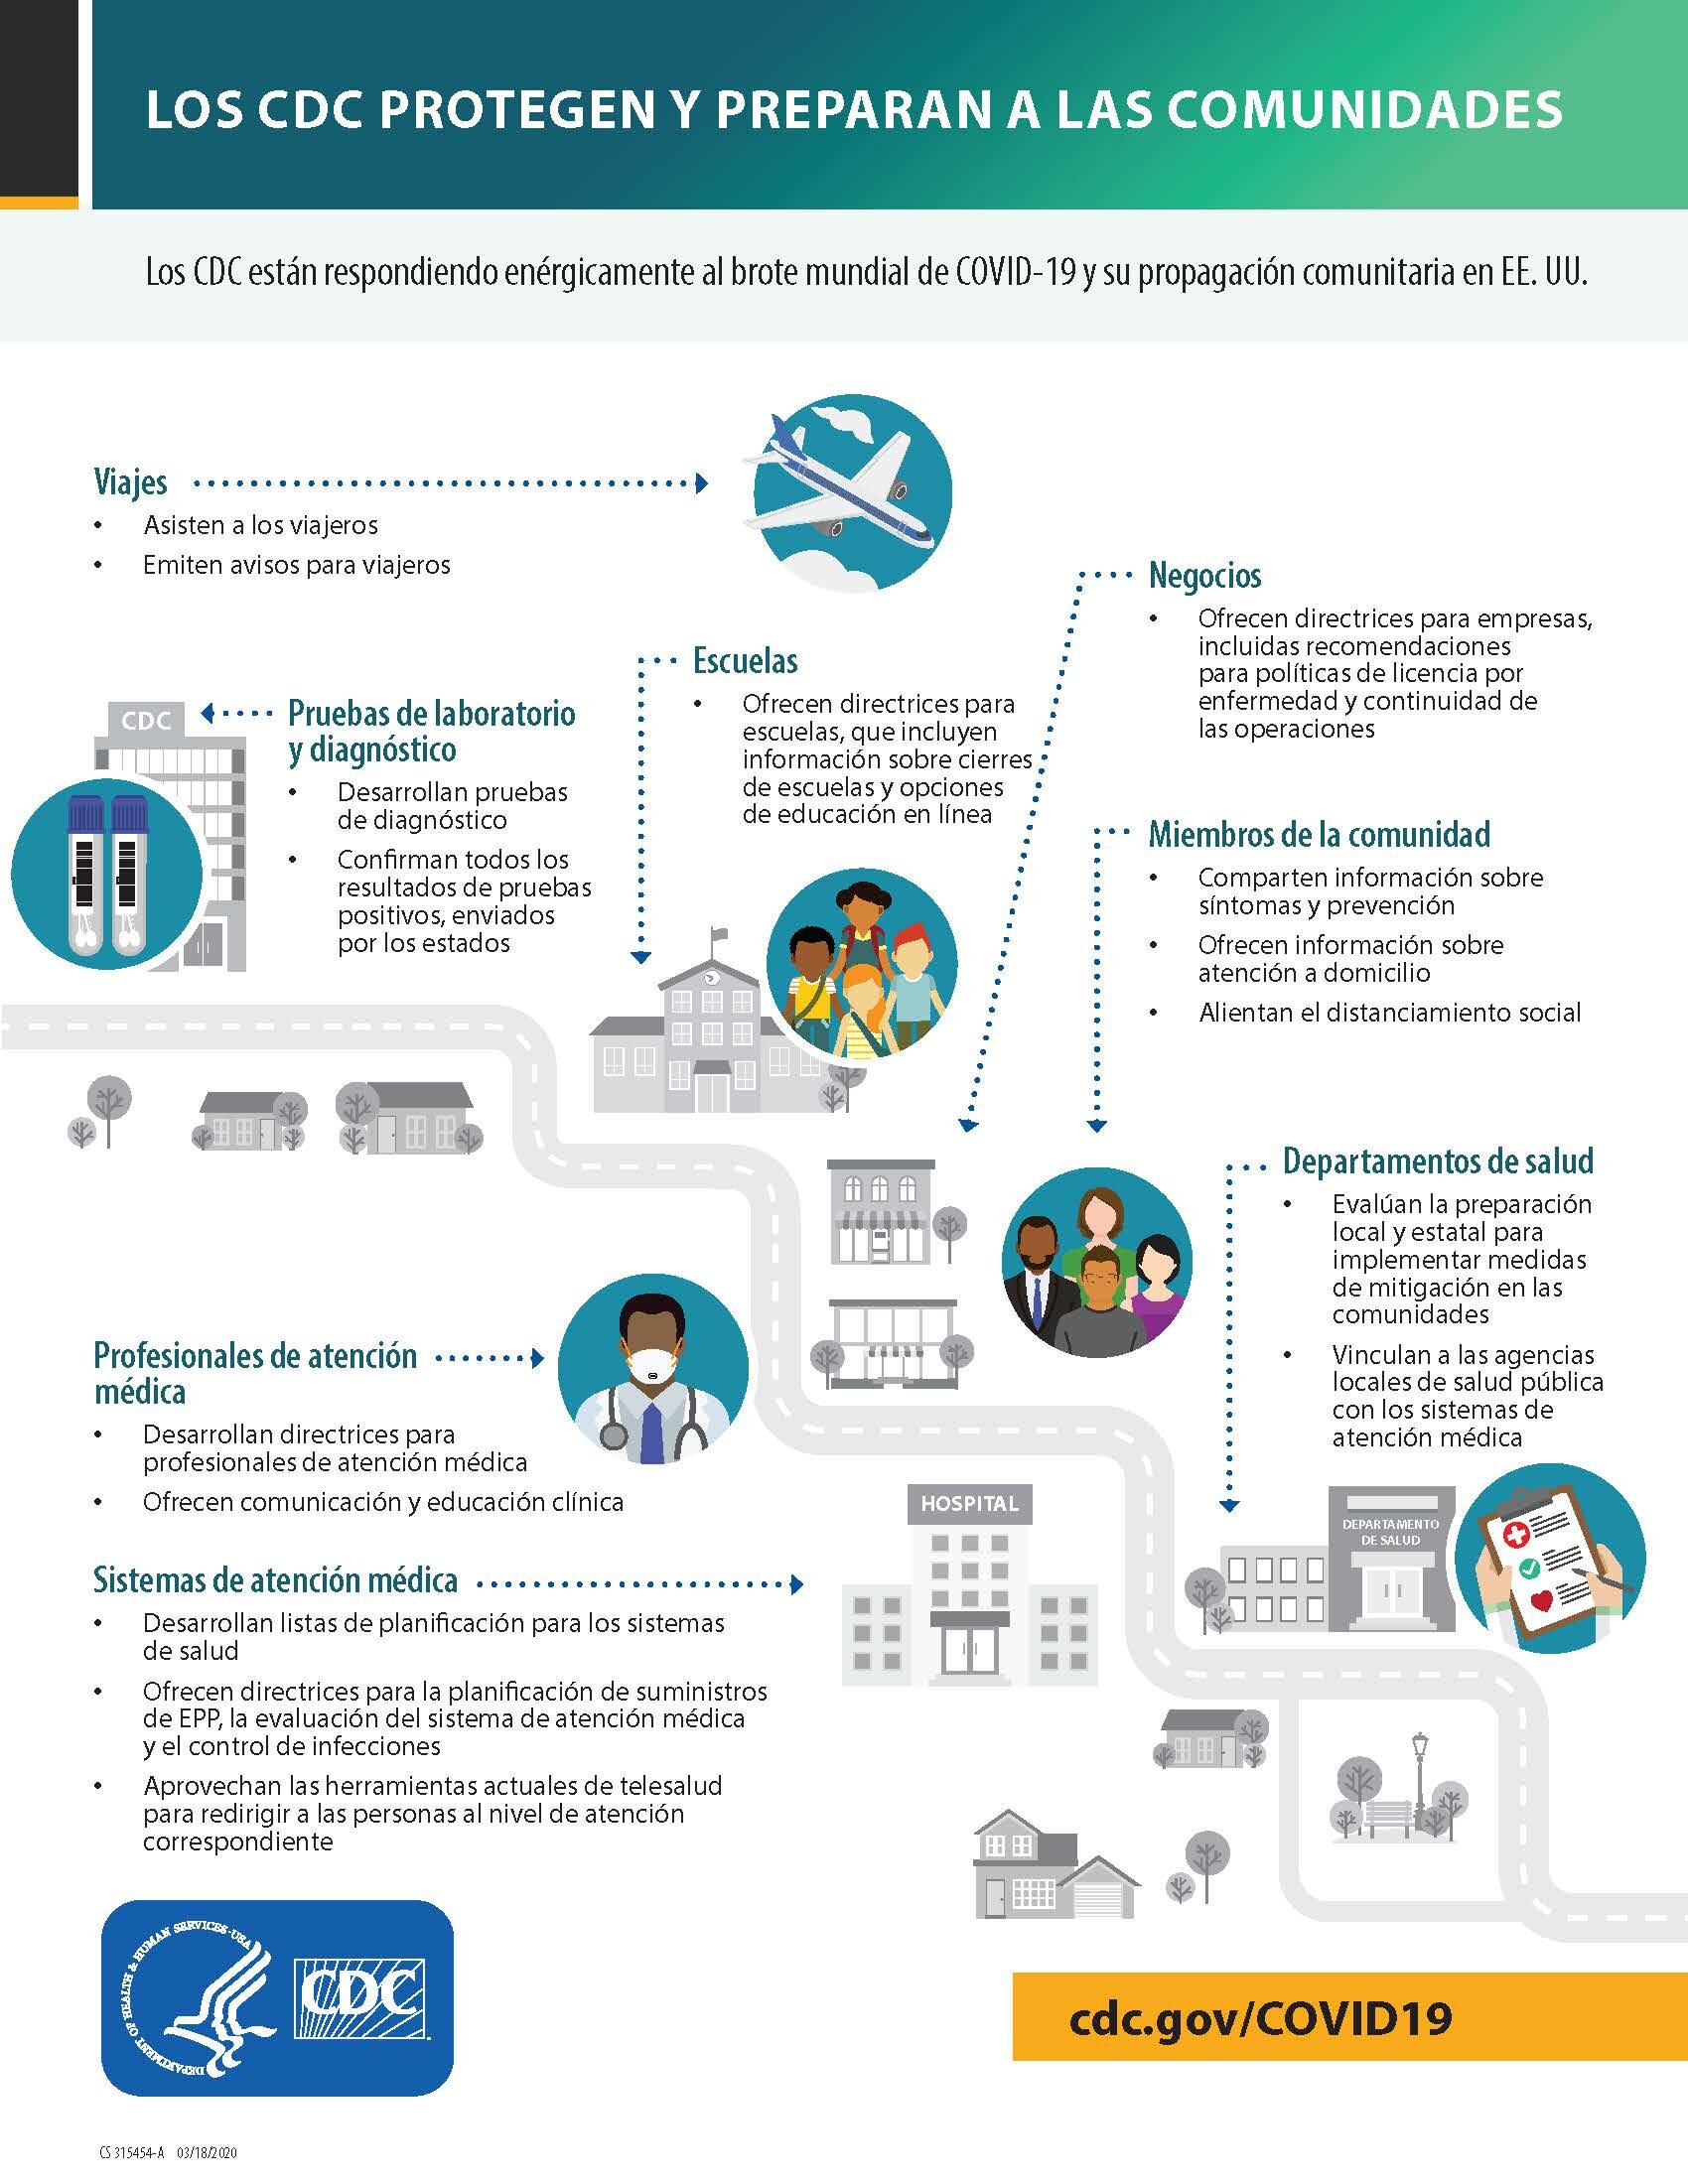 LOS CDC PROTEGEN Y PREPARAN A LAS COMUNIDADES_infographic cdc protects-spanish.jpg